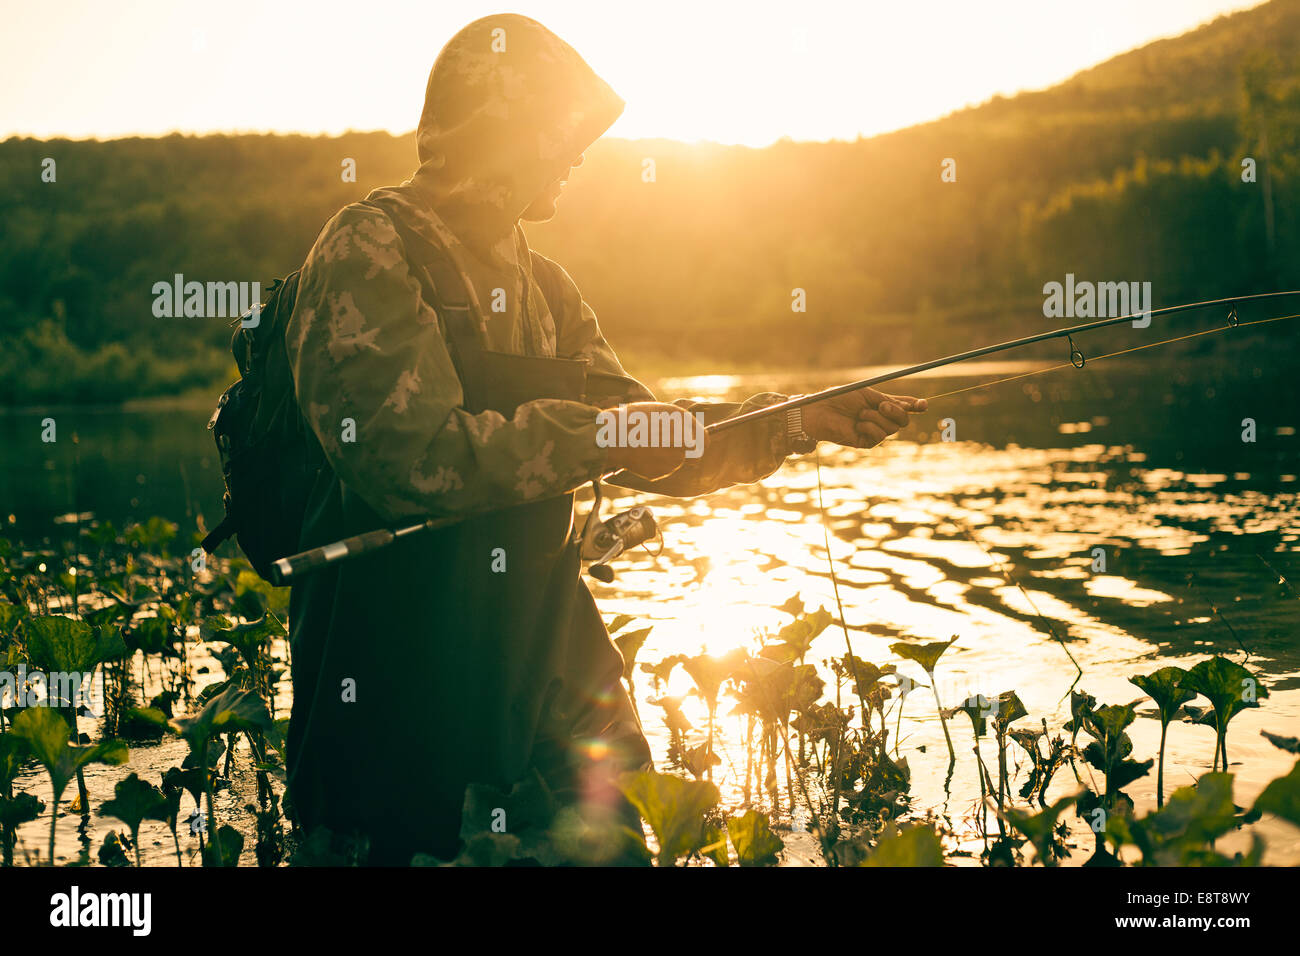 Mari uomo pesca nel lago Foto Stock